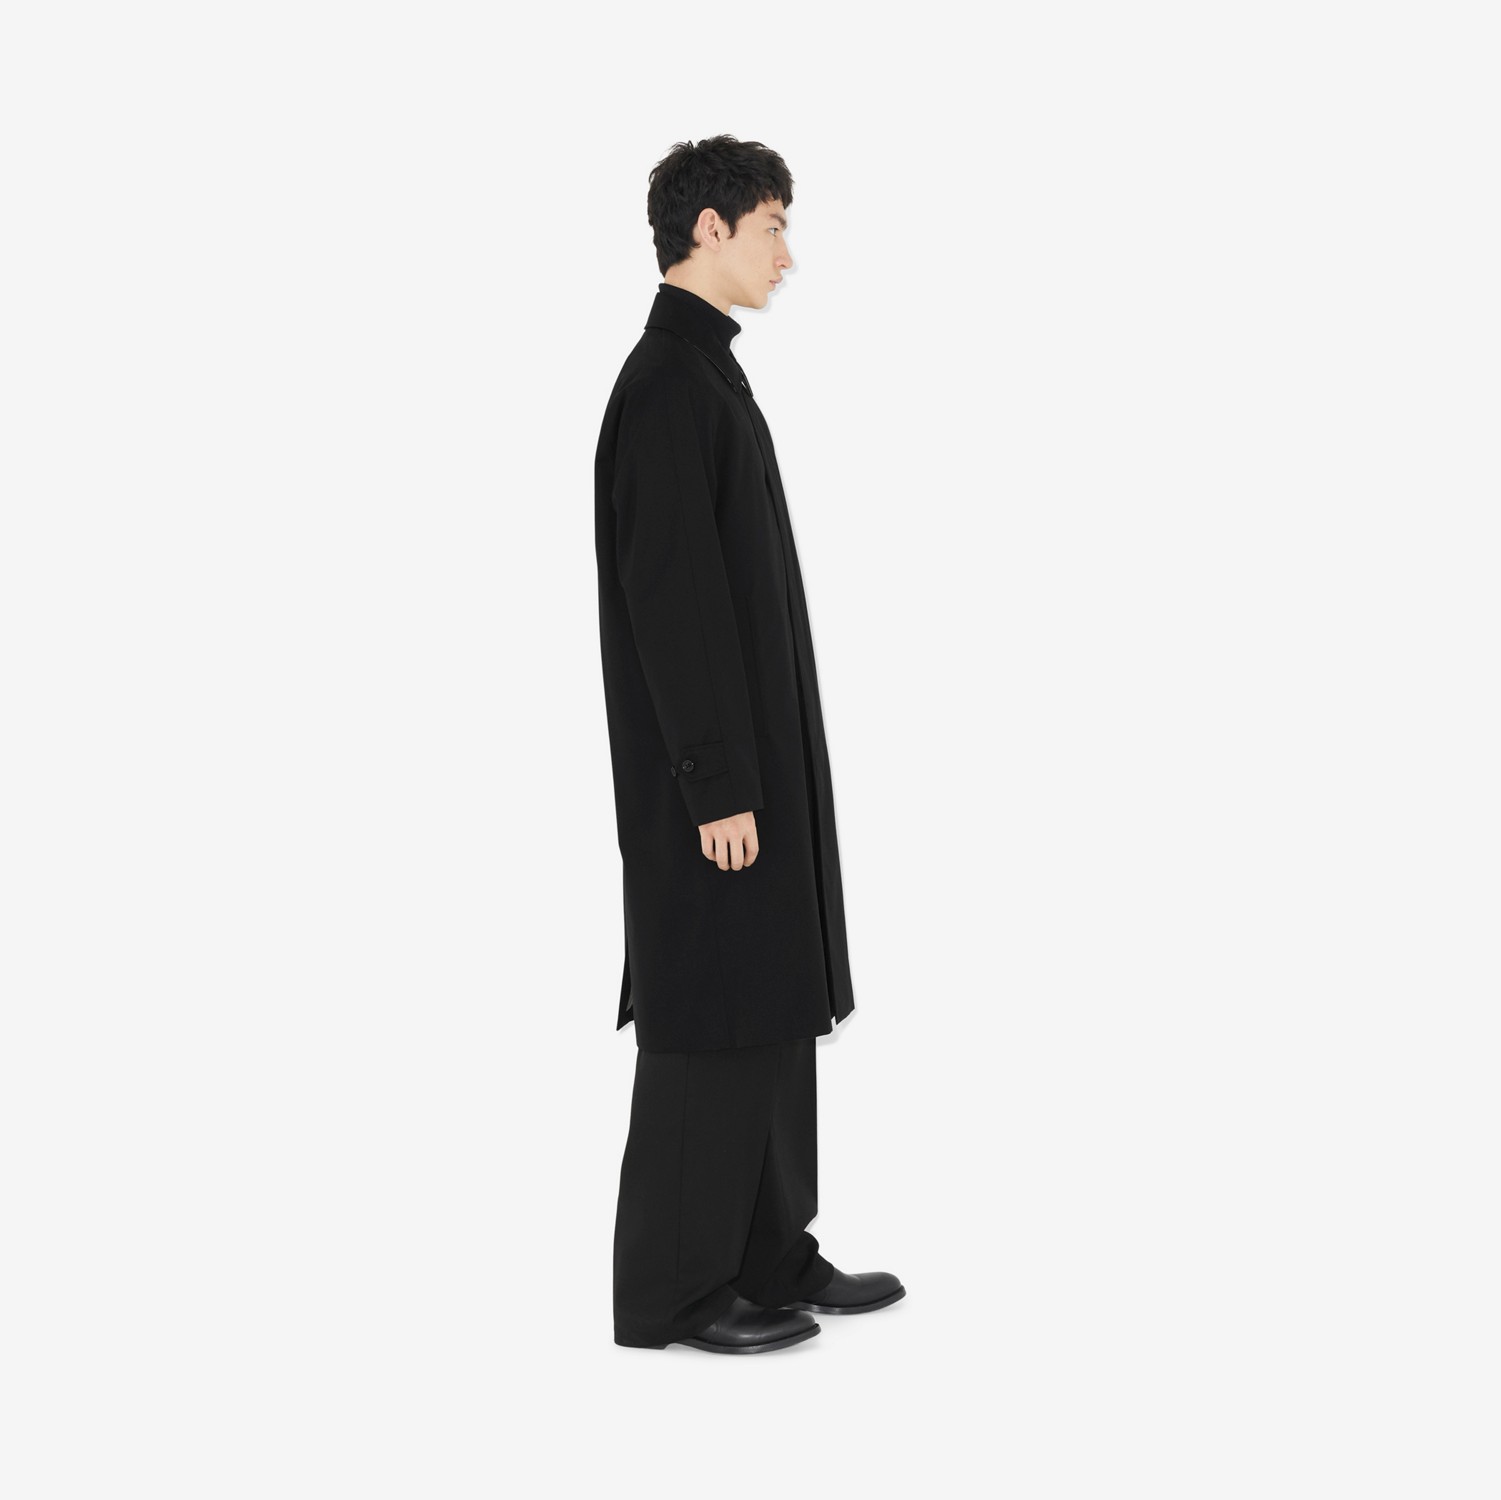 卡姆登版型 – 长款 Heritage 轻便大衣 (黑色) - 男士 | Burberry® 博柏利官网